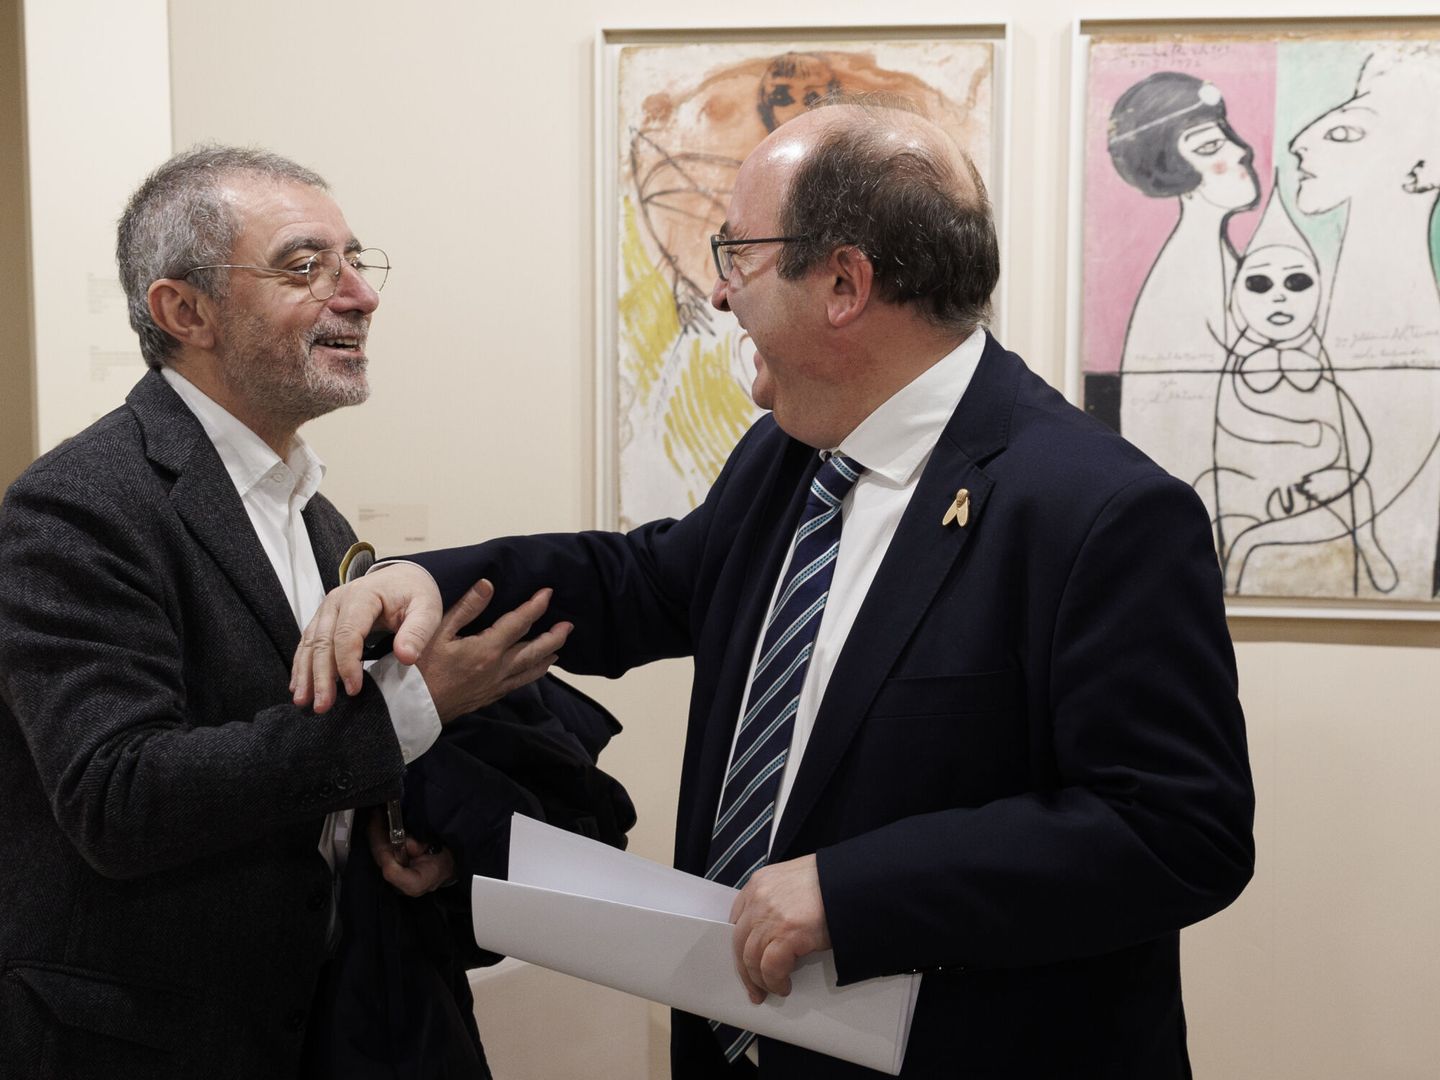 El ministro de Cultura y Deporte, Miquel Iceta, con el exdirector del Museo Reina Sofía Manuel Borja-Villel (i) durante su visita a la Feria Internacional de Arte Contemporáneo ARCOmadrid el pasado mes de febrero. (EFE)